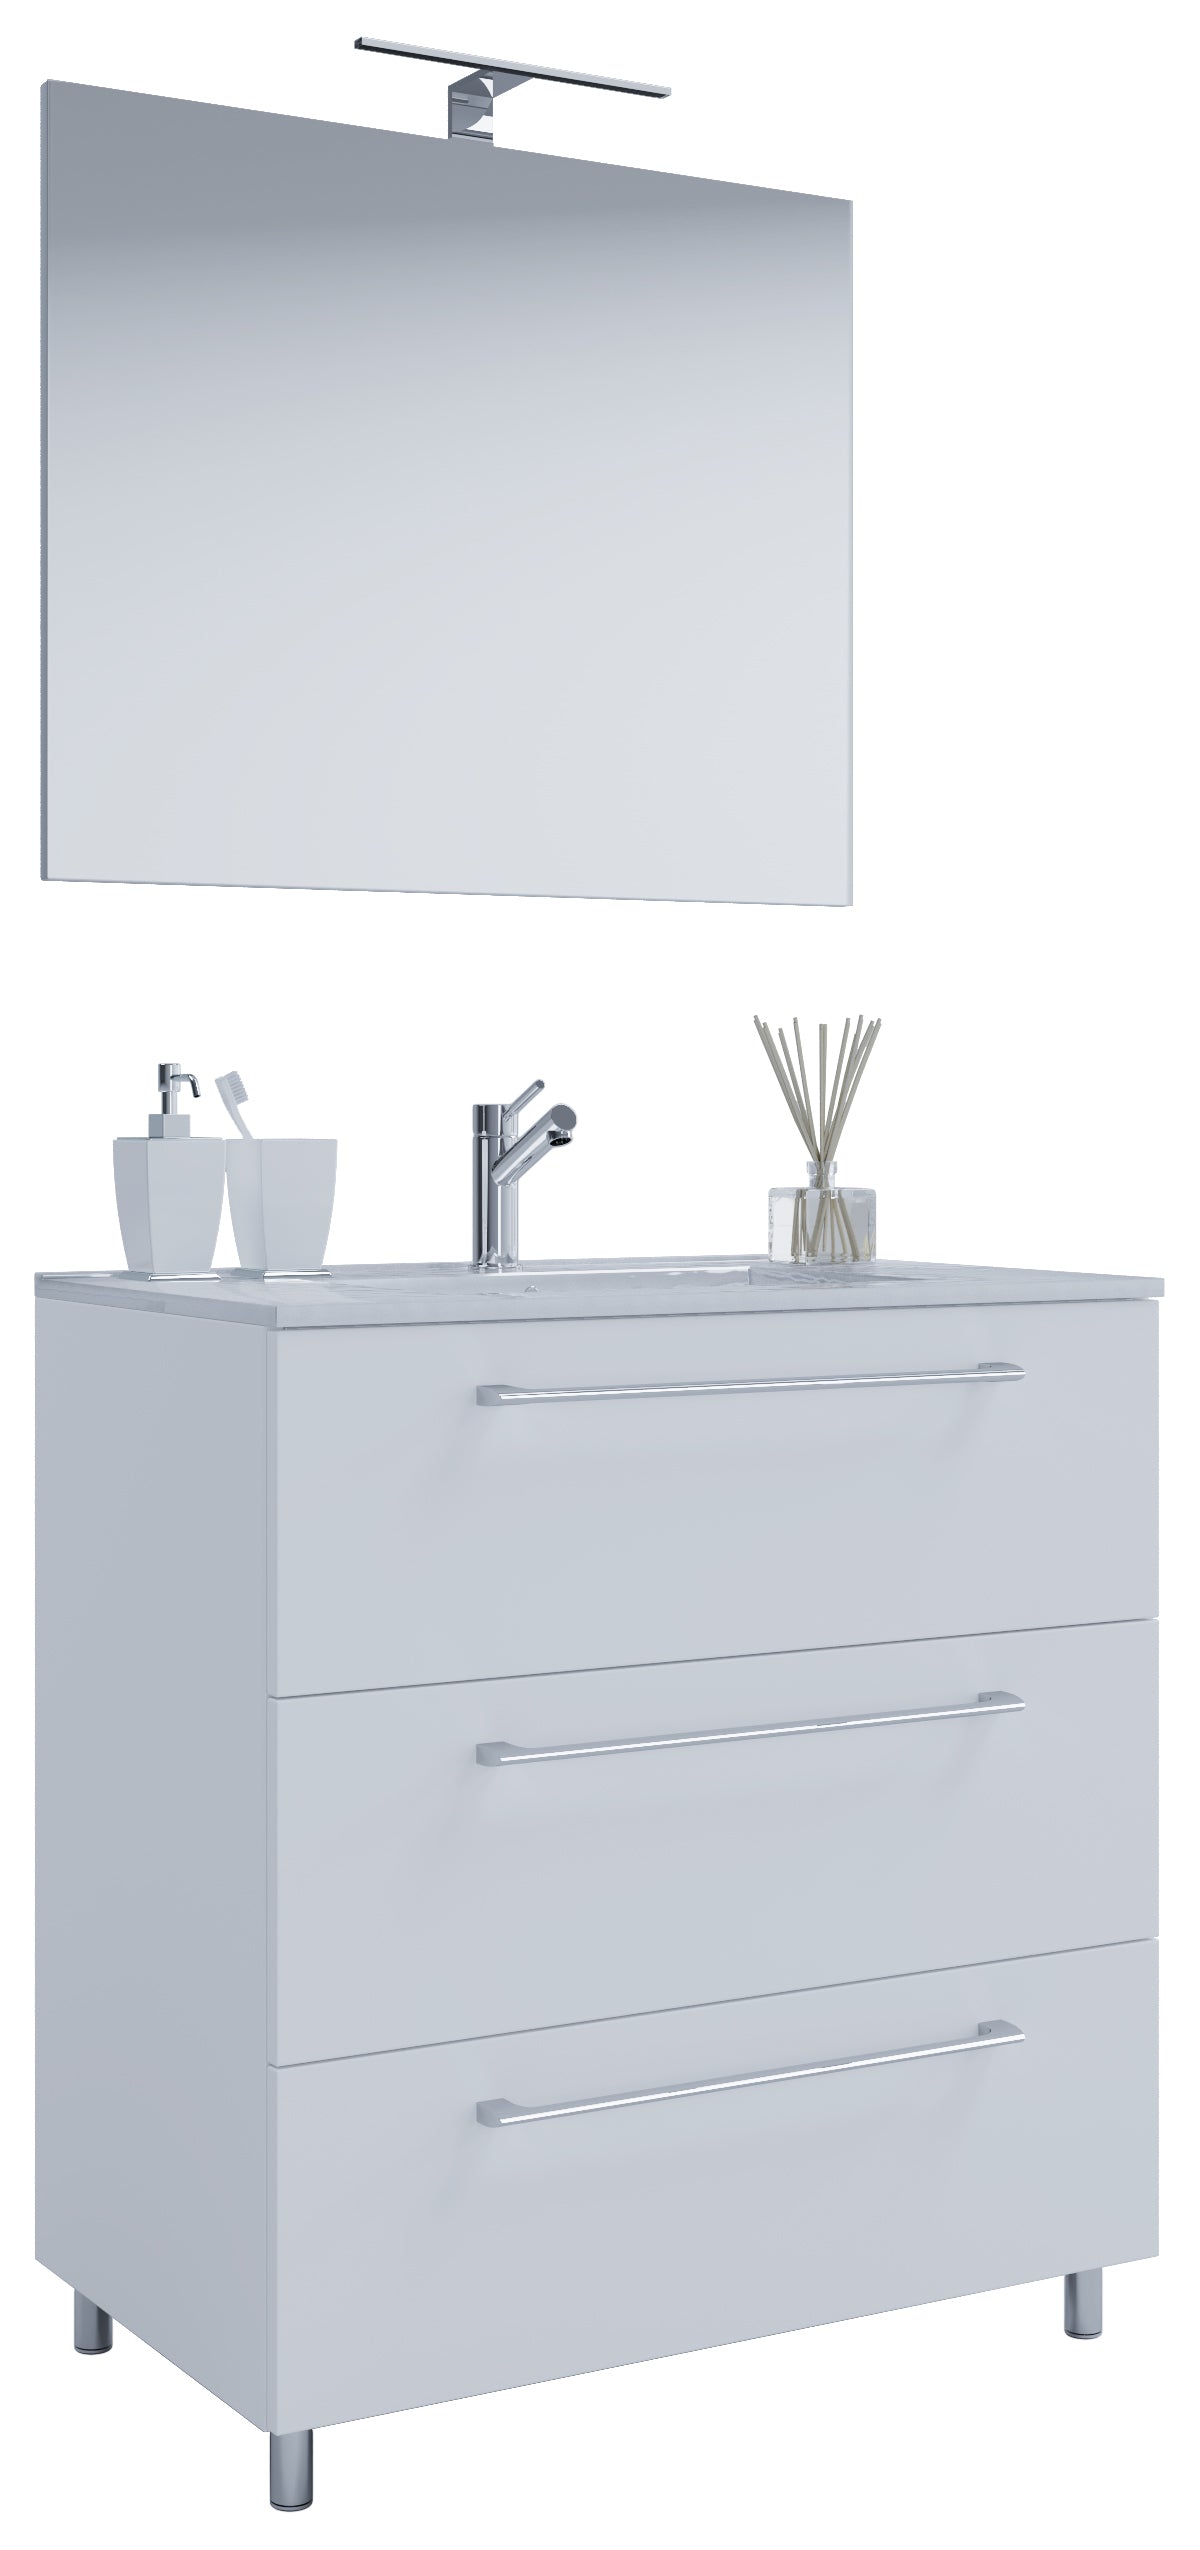 10: Underskab med keramisk vask og spejl, H. 86 x B. 60 x D. 46 cm, hvid